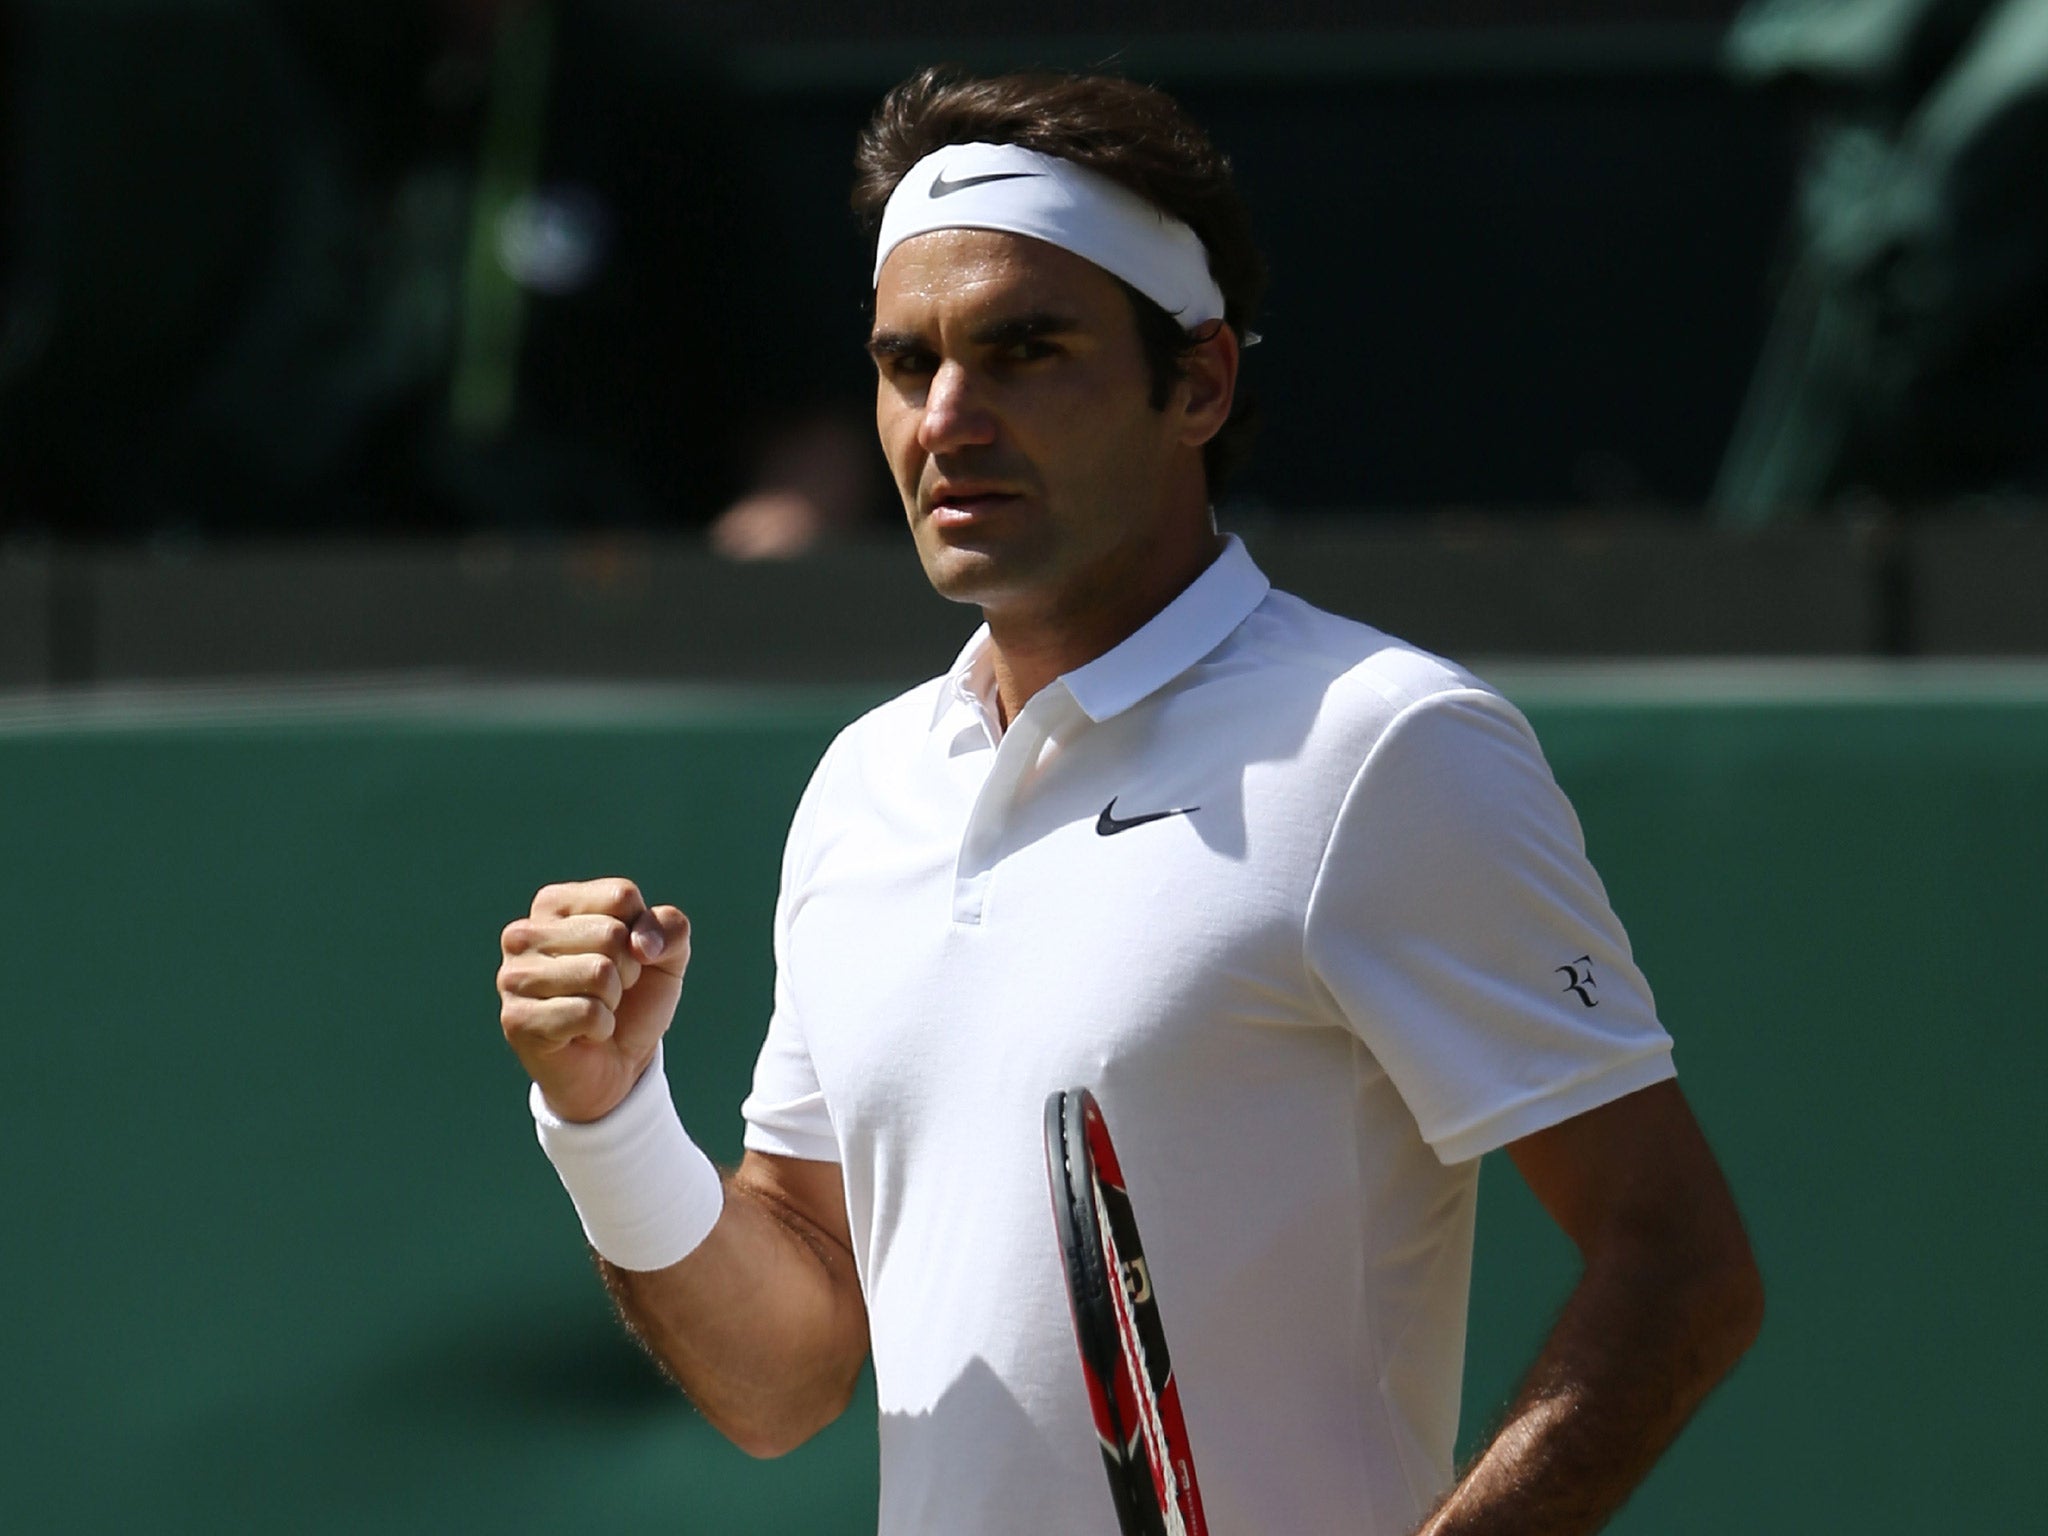 Roger Federer enjoys victory on Centre Court